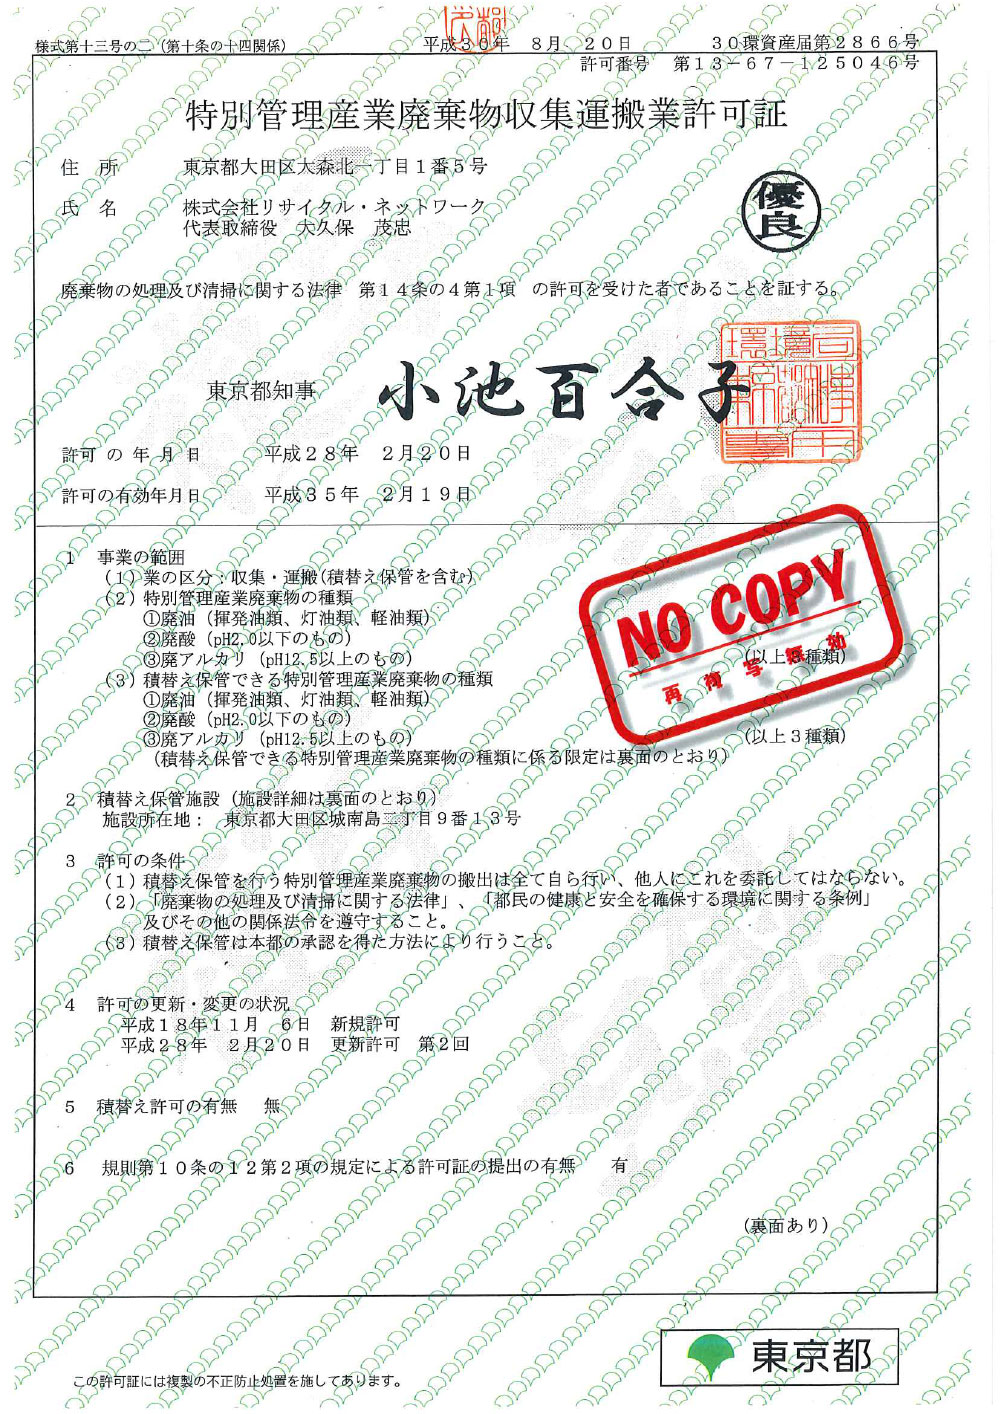 東京都 特別管理産業廃棄物収集運搬許可証